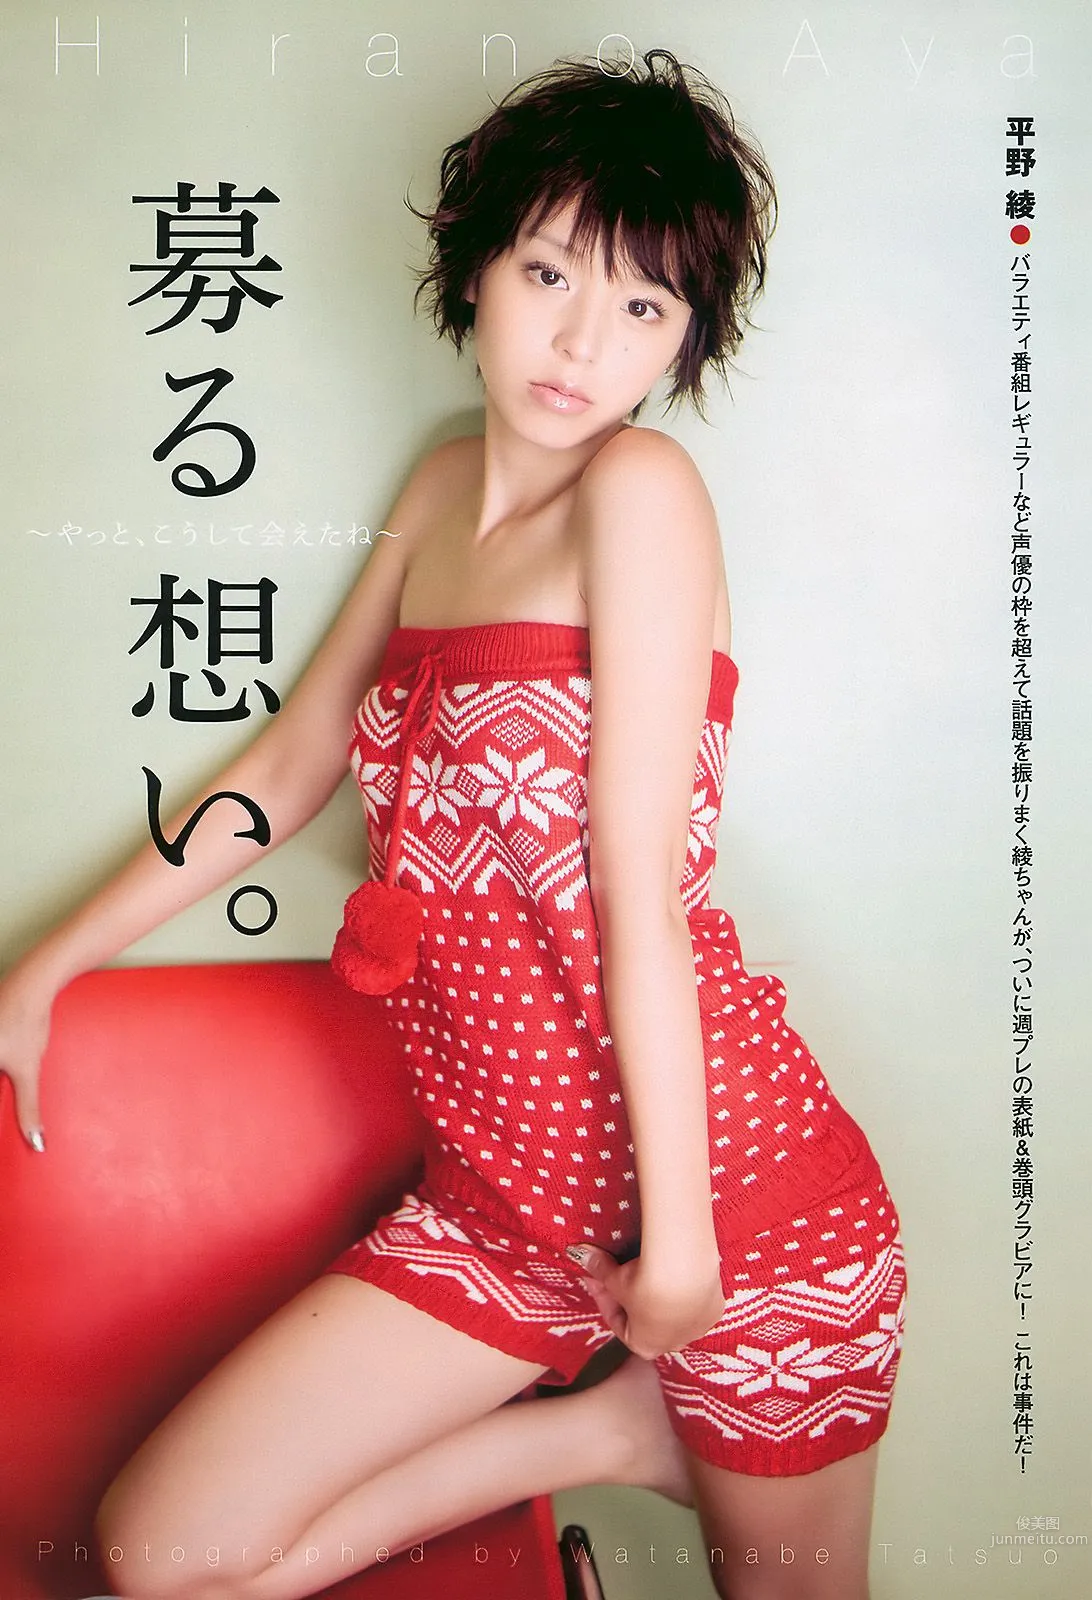 平野綾 AKB48 佐藤寛子 西田麻衣 森崎友紀 Agnes Lum [Weekly Playboy] 2010年No.51 写真杂志2